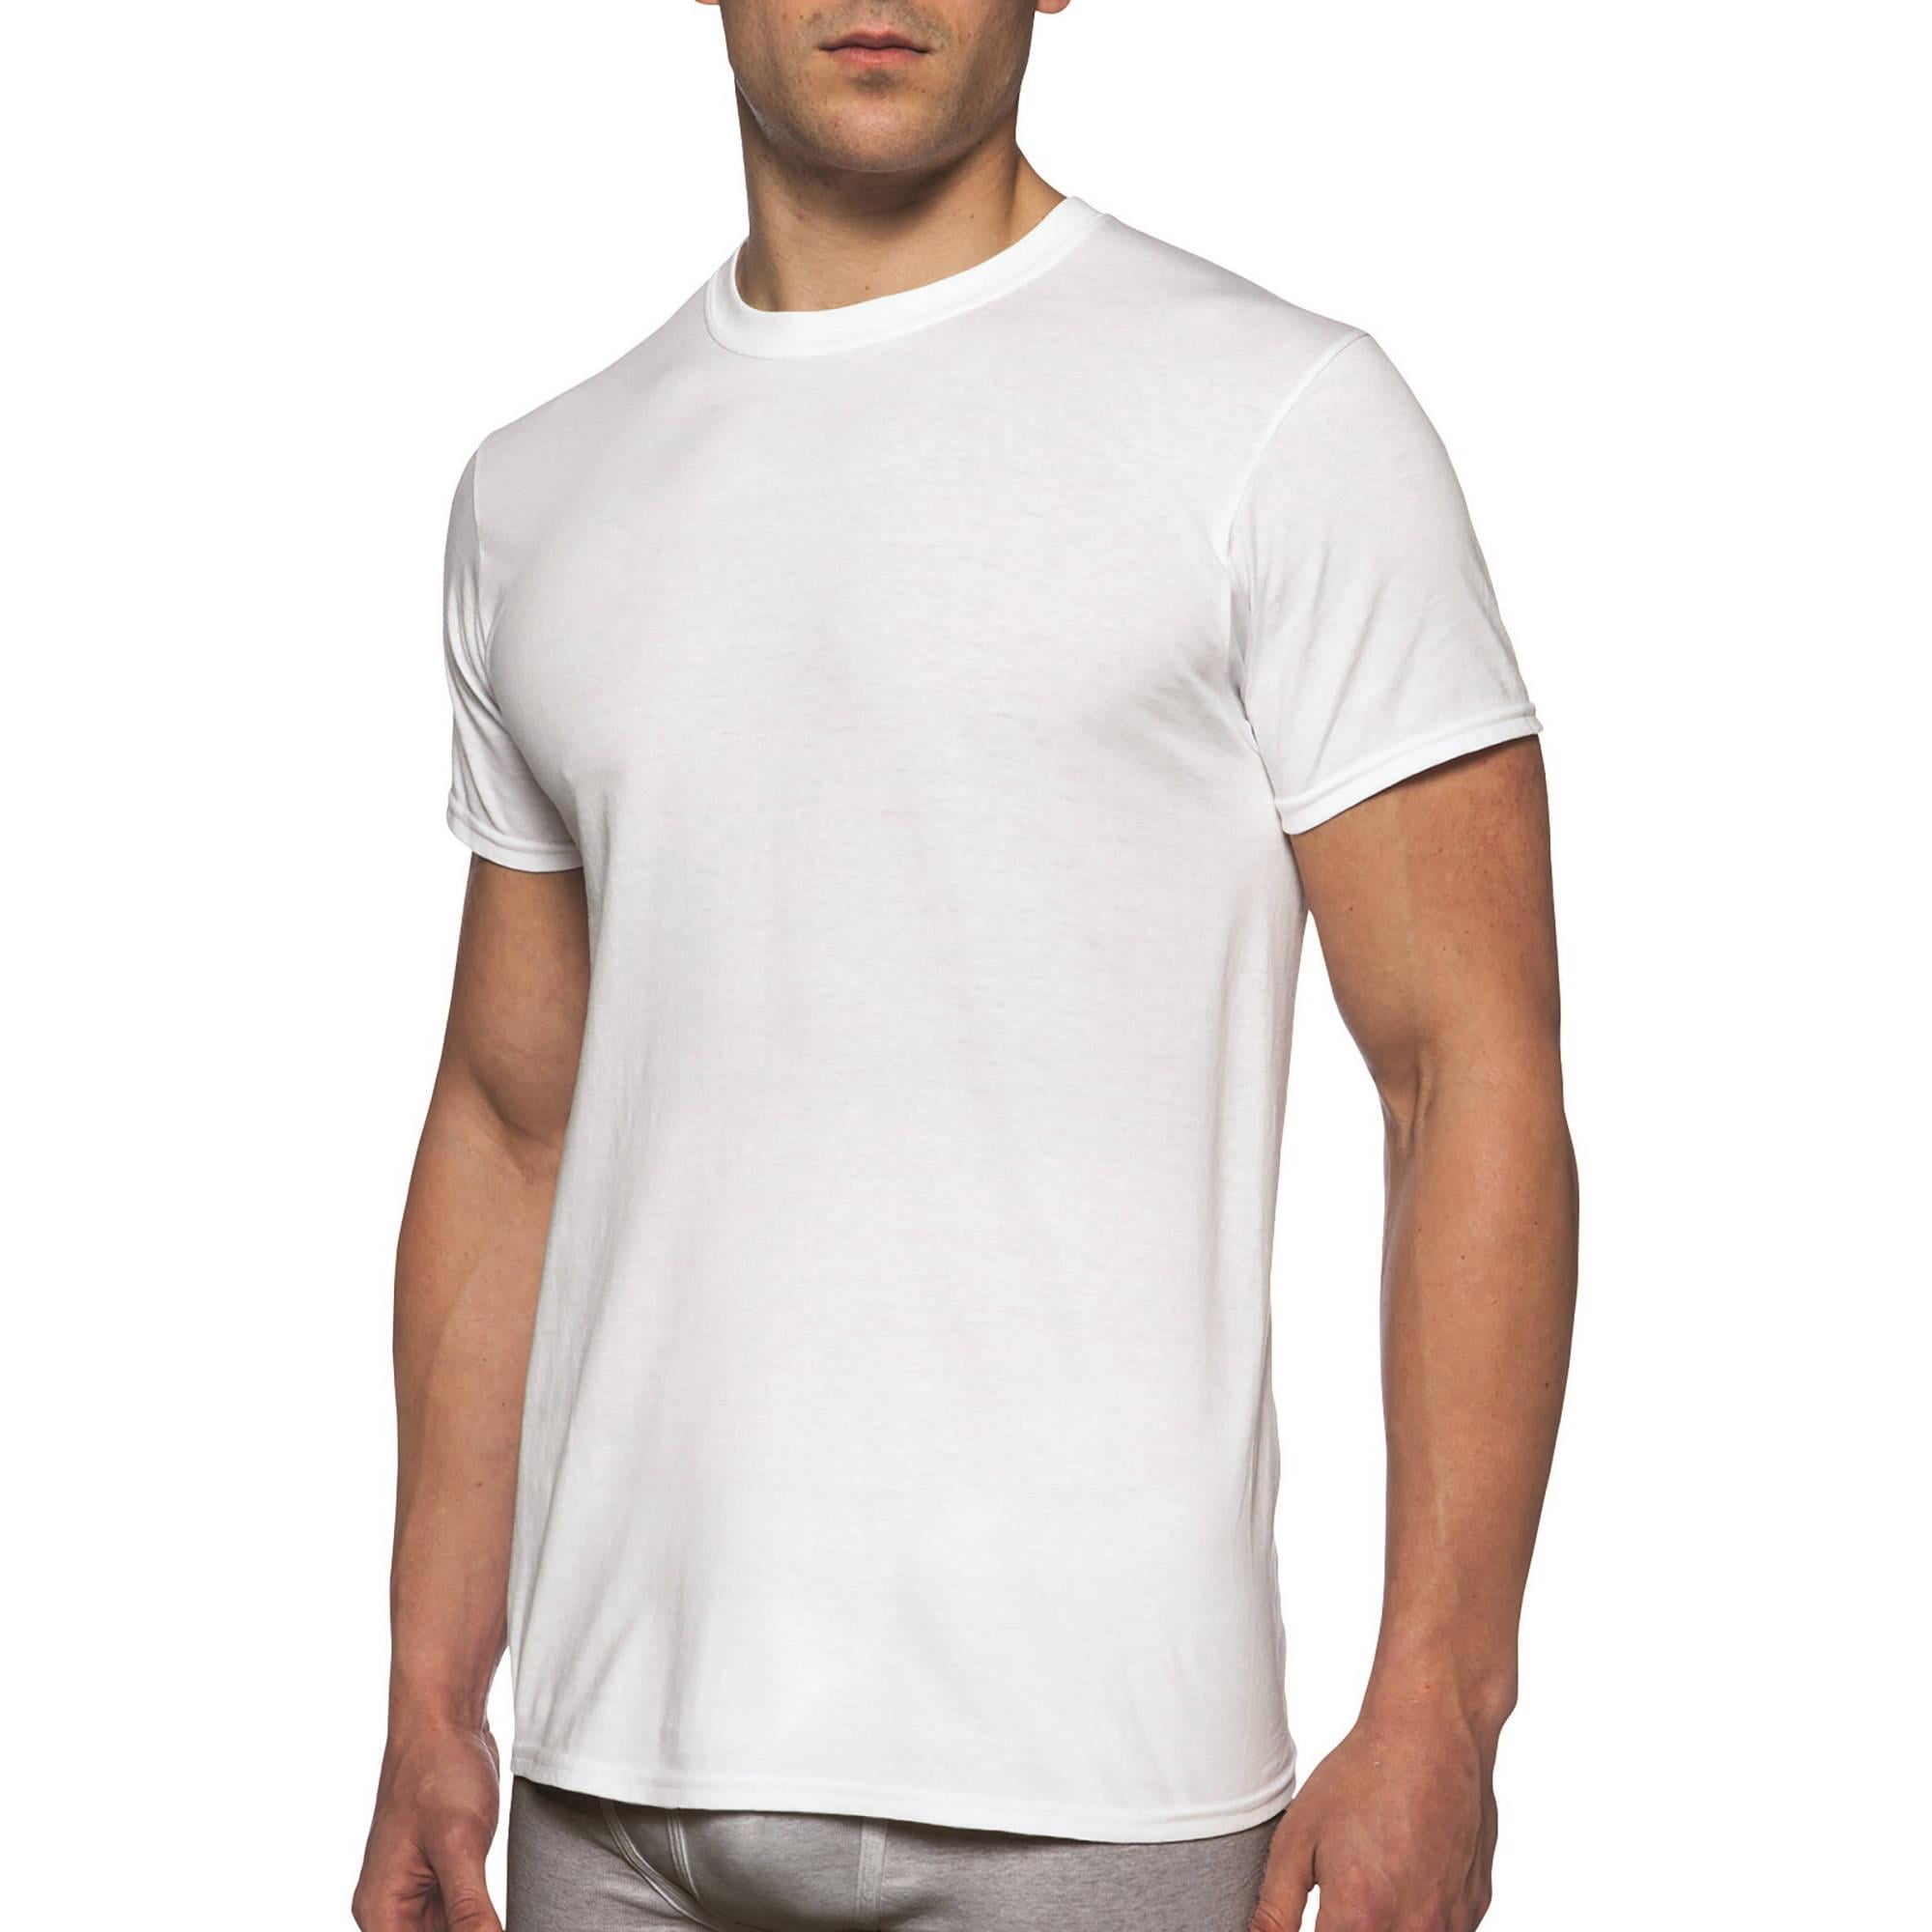 Gildan Men's Short Sleeve Crew White T-Shirt